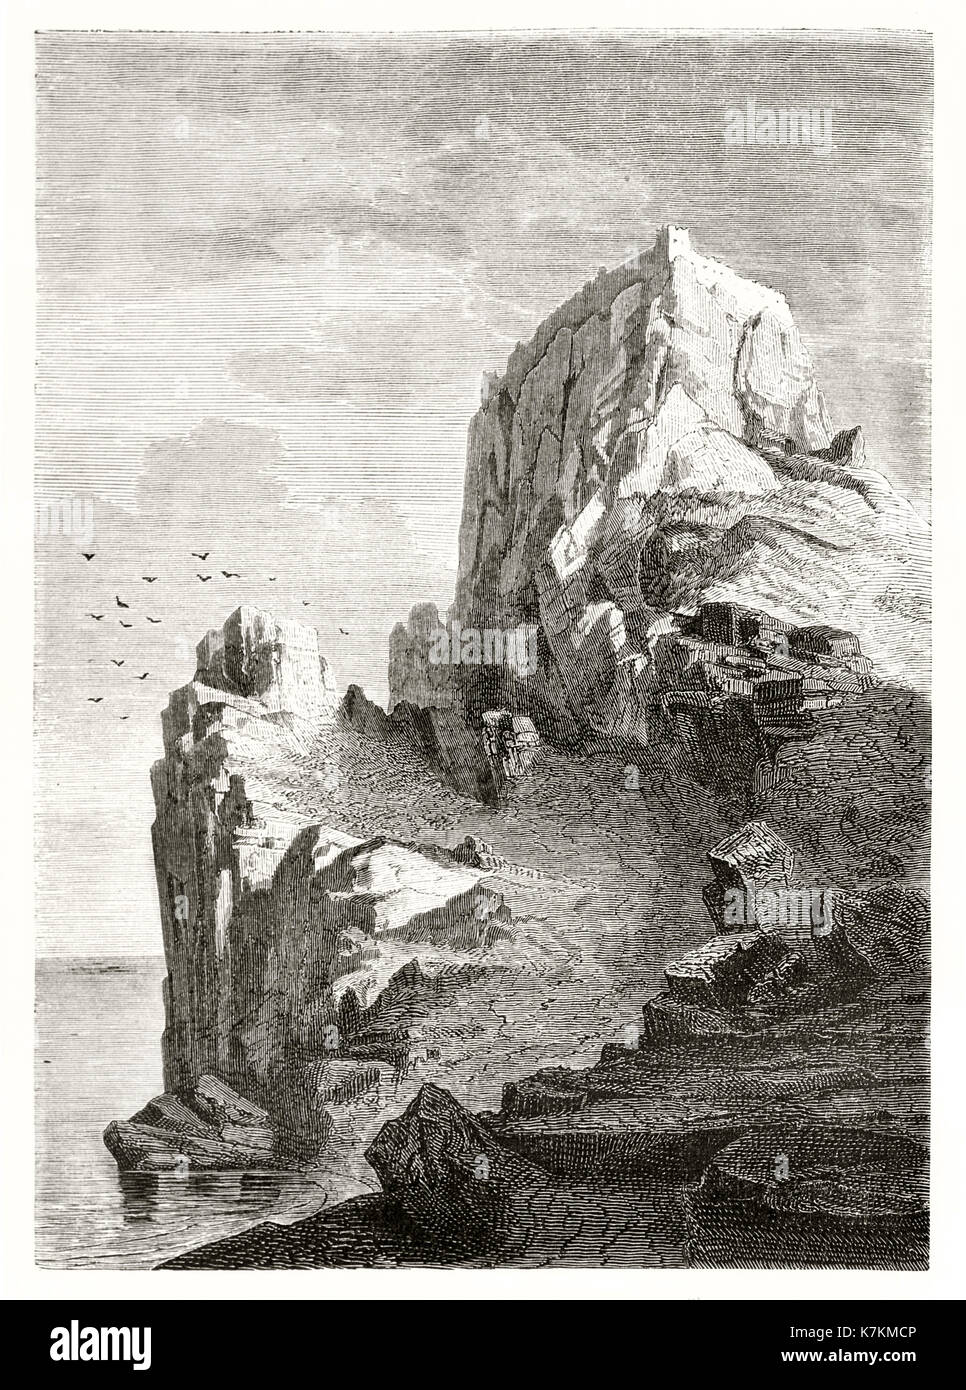 Lindos castle, Rhodes island. By Maurand, publ. on Le Tour du Monde, Paris, 1862 Stock Photo